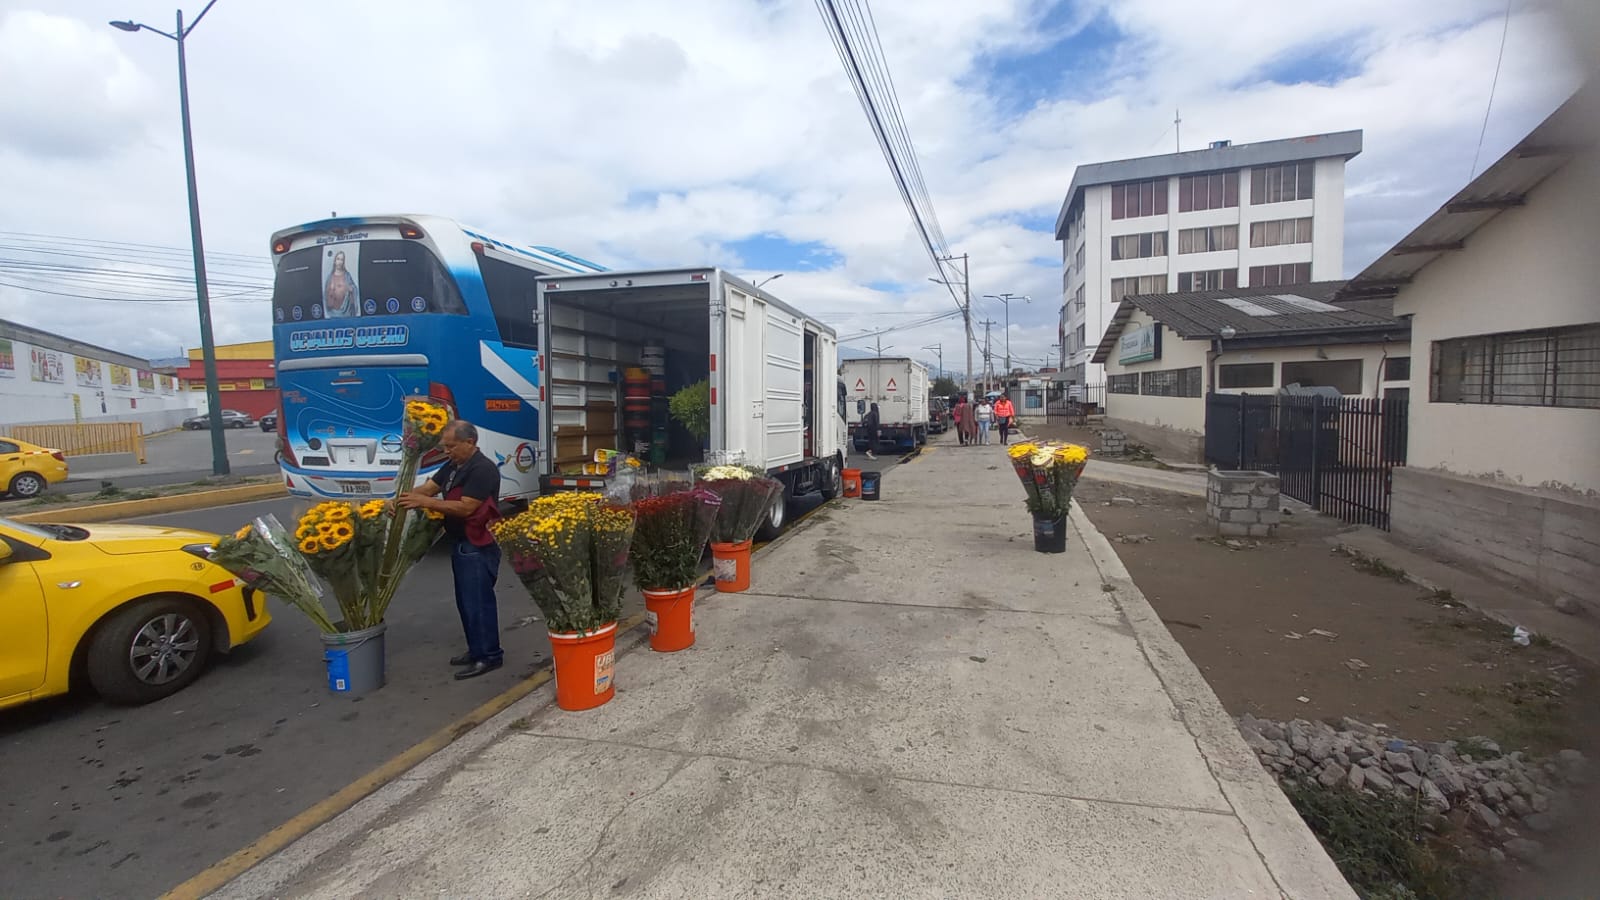 Todos los jueves se desarrolla la feria de flores en el mercado América, por lo que los comerciantes decidieron ubicarse en la calles, ya que el centro de acopio permanece cerrado.